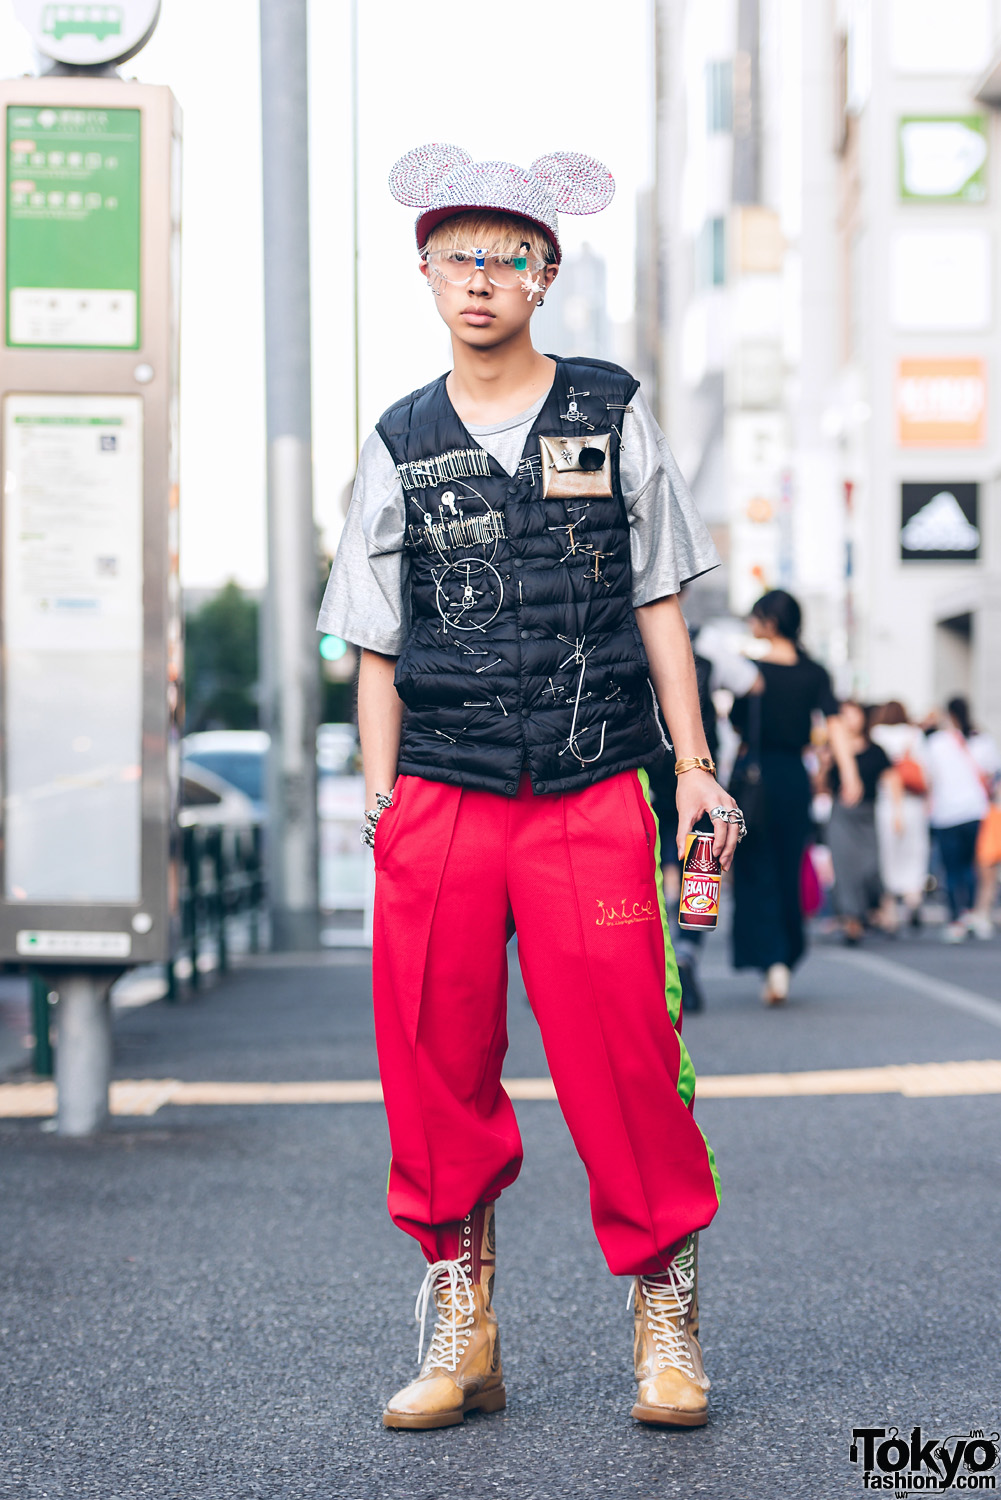 Harajuku Guy in Remake Fashion Street Style w/ UNIQLO, Dog Harajuku & Tokyo Human Experiments